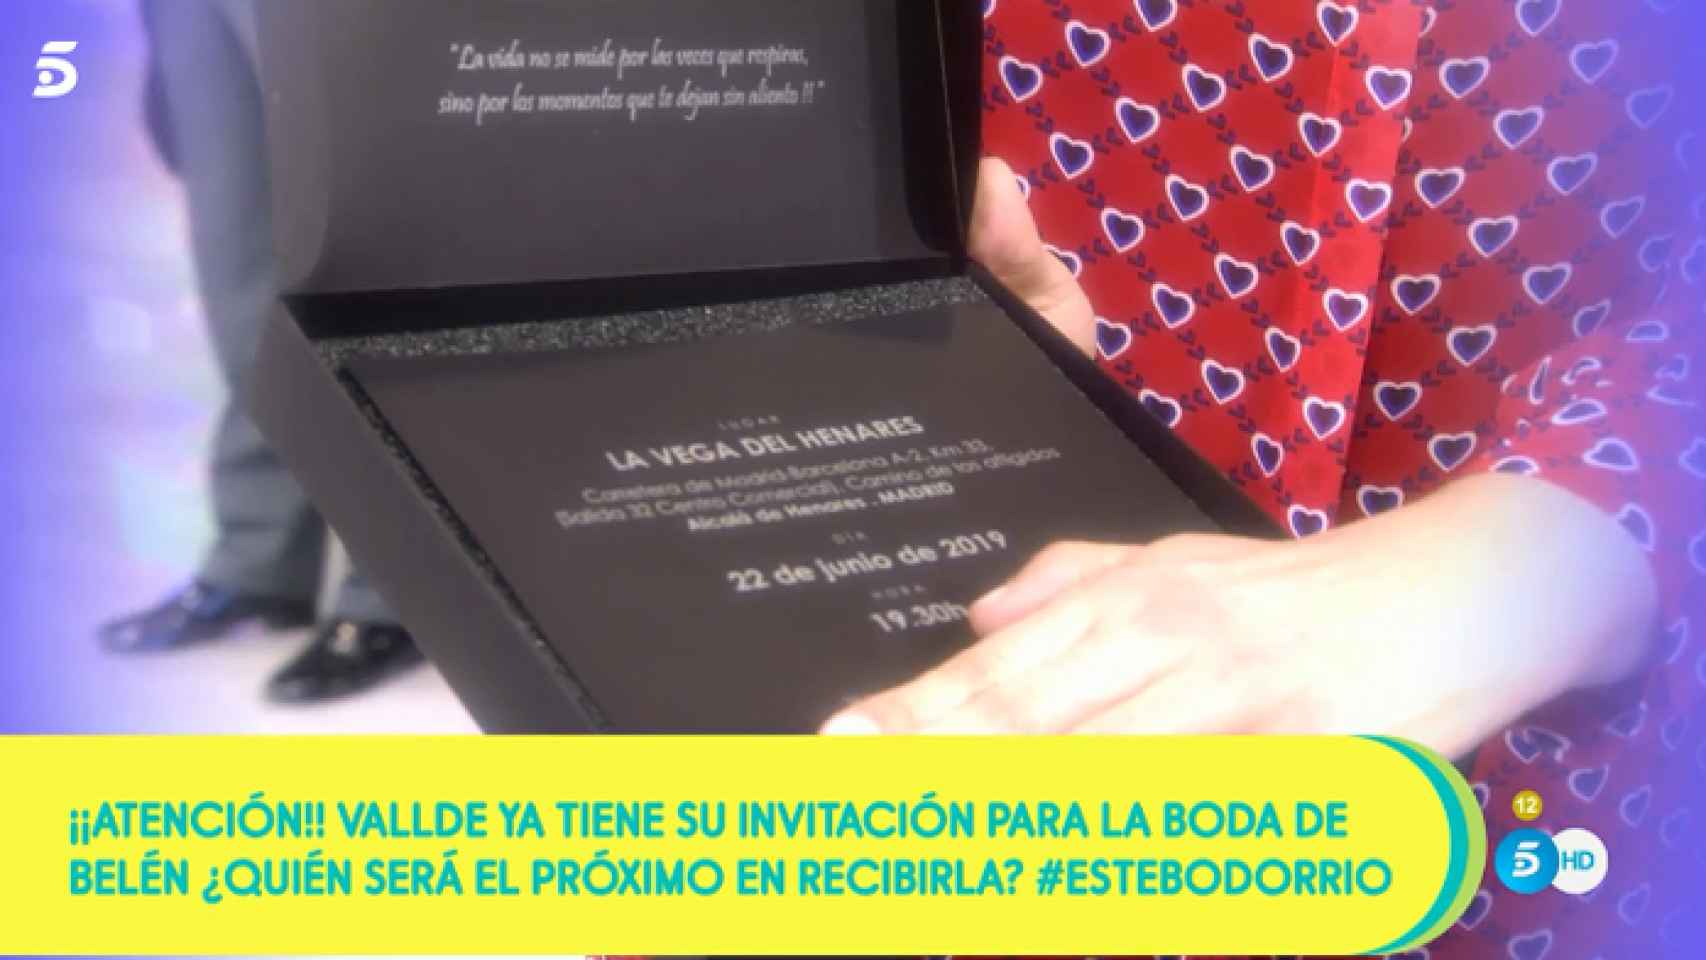 Detalle de la caja y el texto de las invitaciones de boda de Belén Esteban.